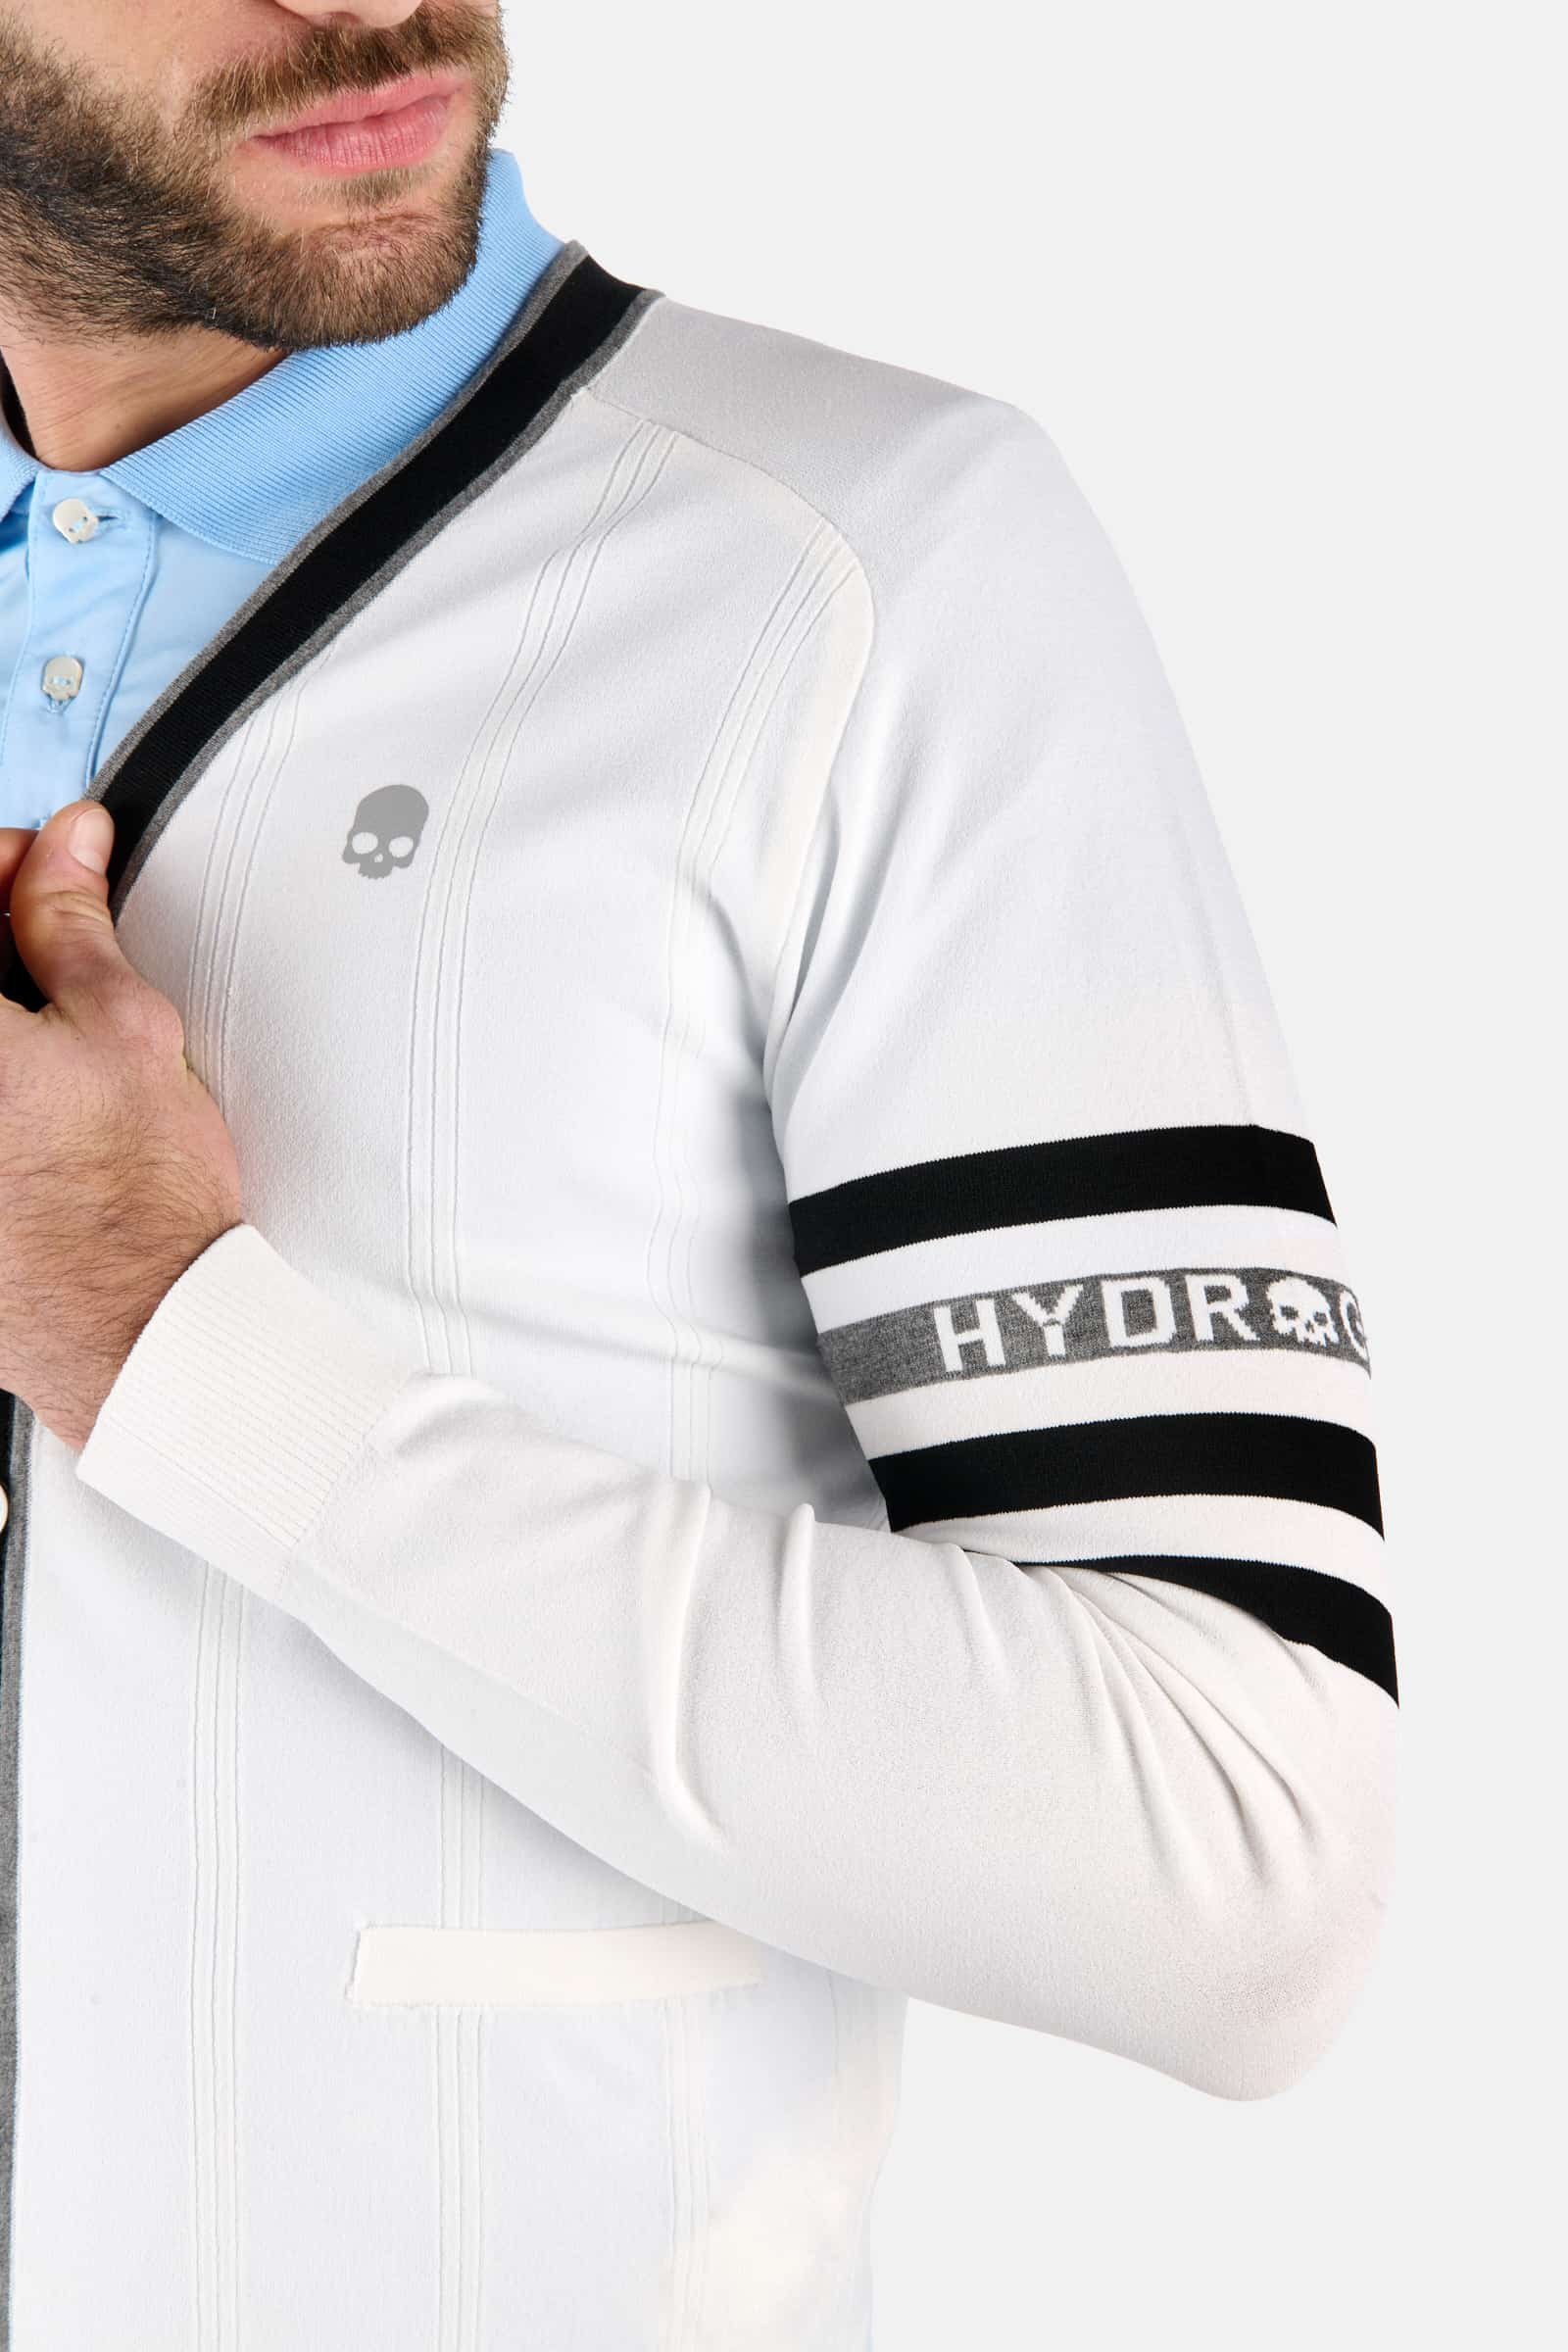 KNITTED CARDIGAN - WHITE,BLACK - Hydrogen - Luxury Sportwear